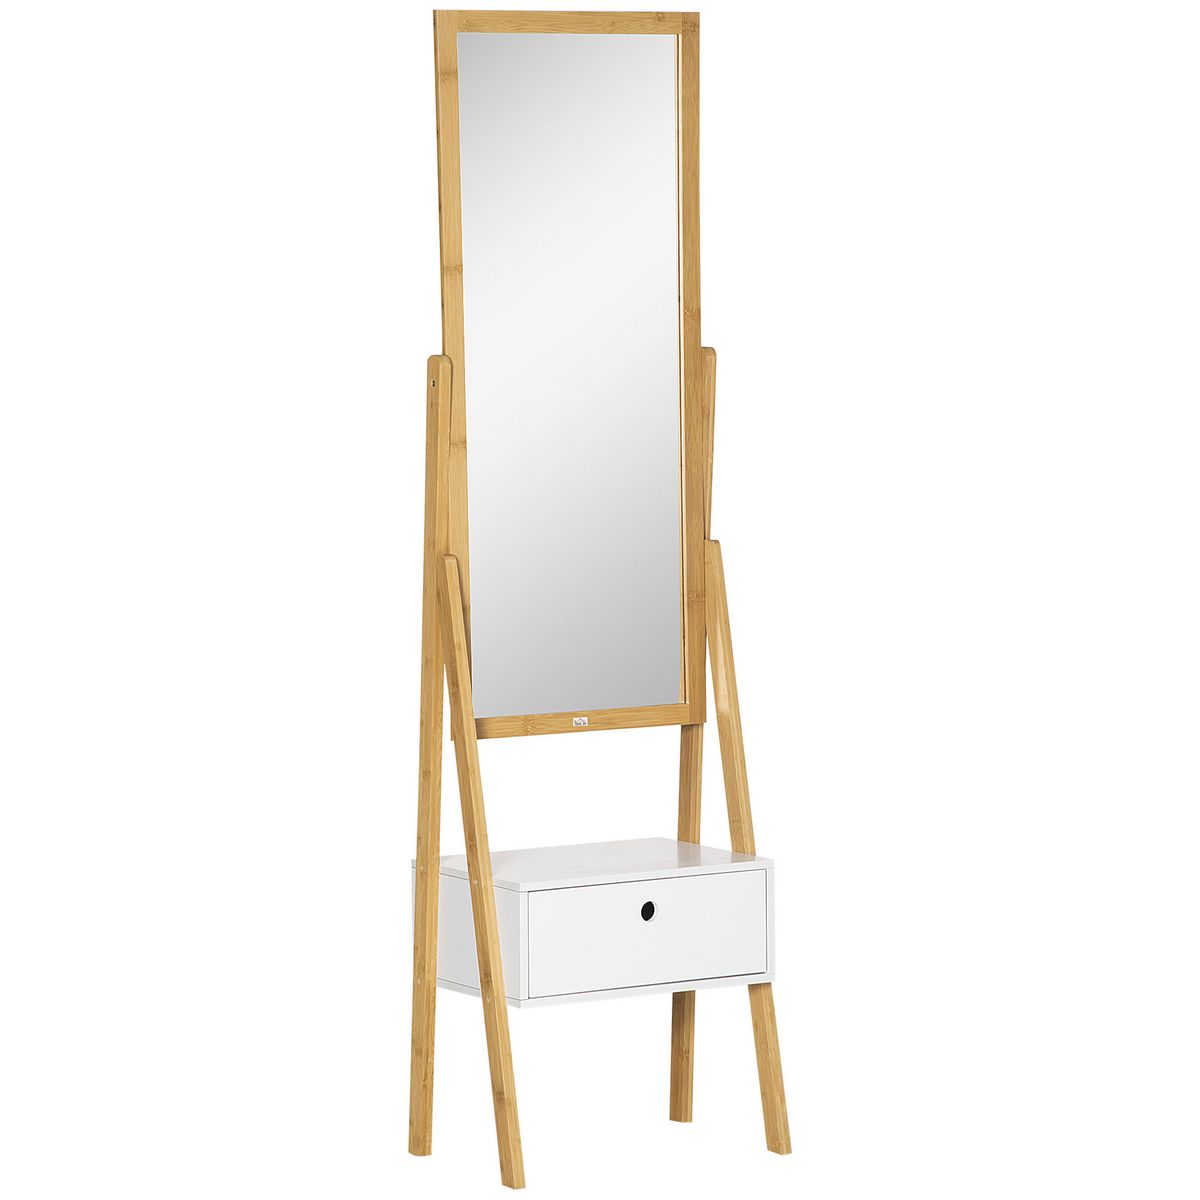 HOMCOM Miroir sur pied avec rangement tiroir en bambou et MDF - dim. 45L x 30l x 160H cm - blanc et naturel